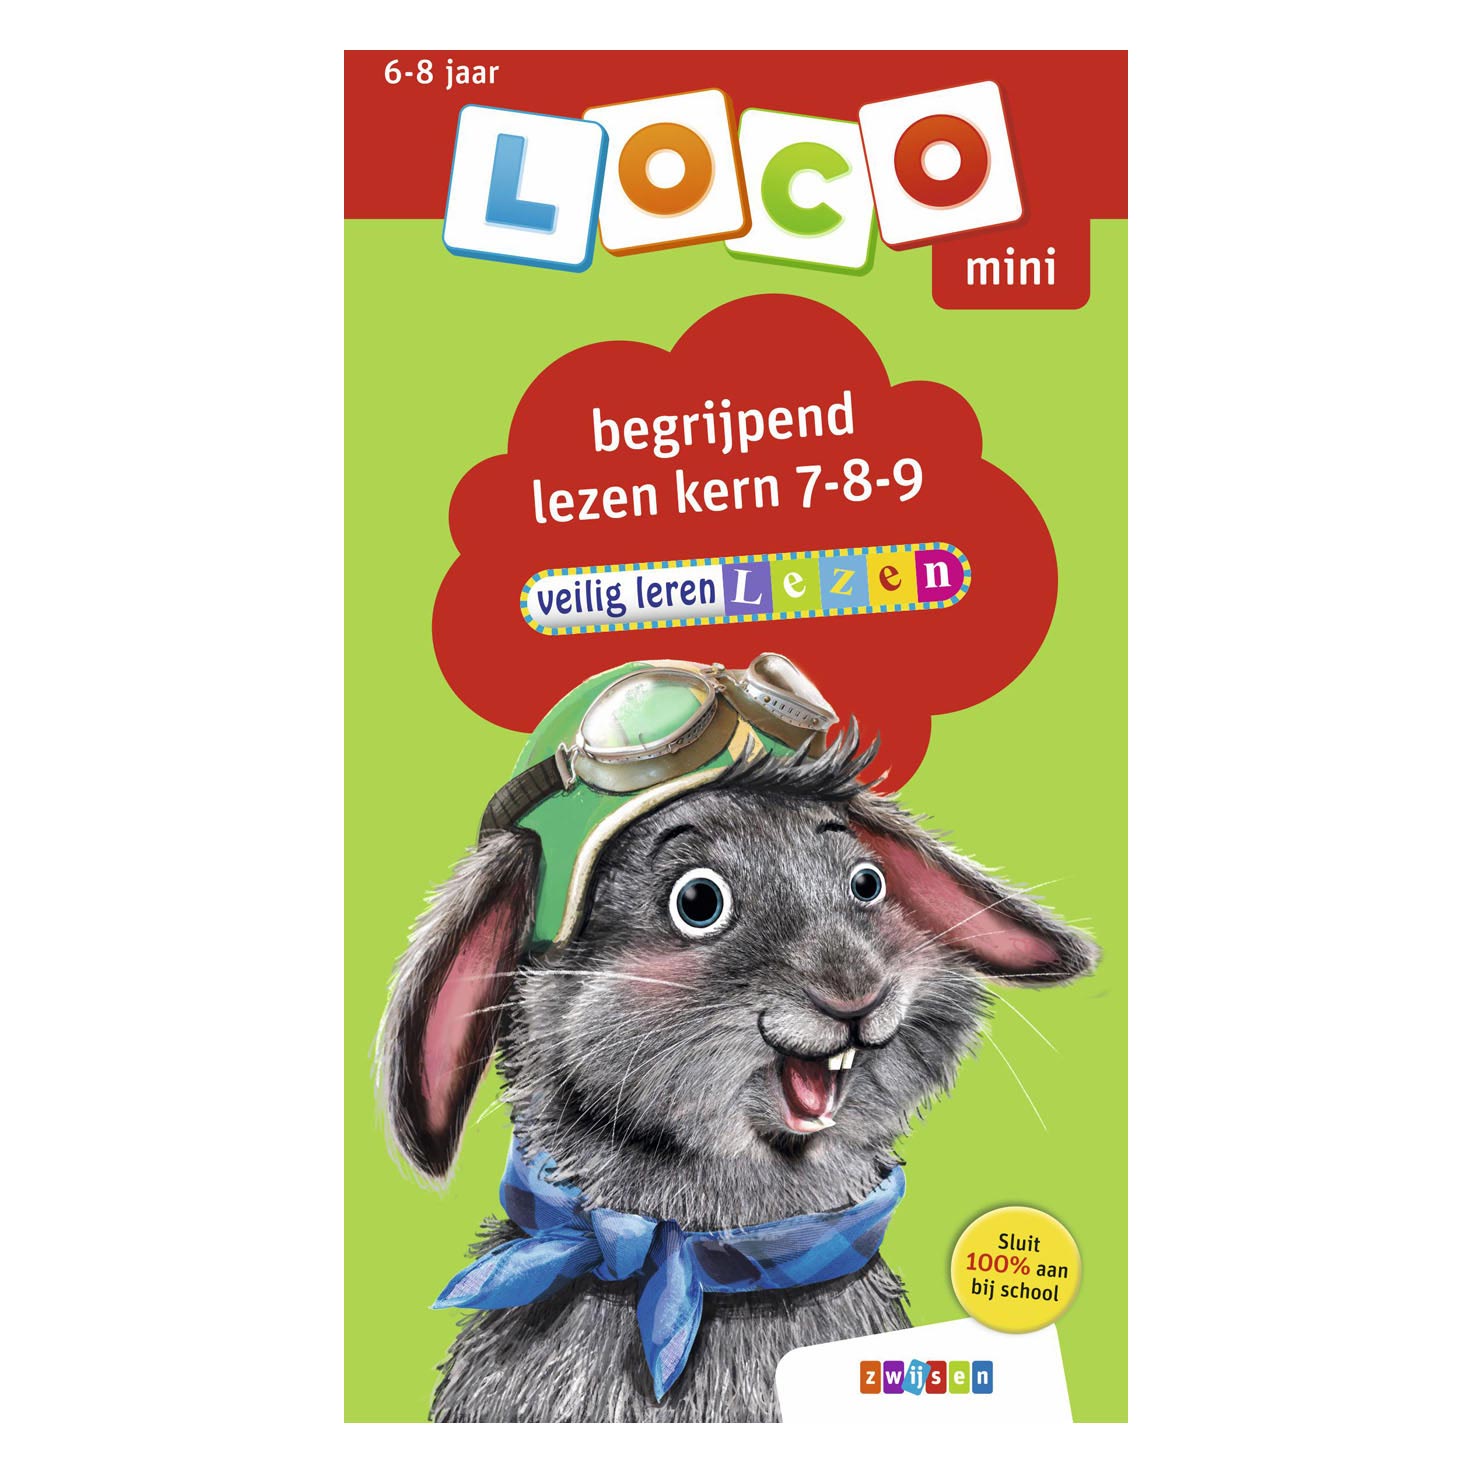 Mini Loco Veilig leren lezen begrijpend lezen Kern 7-8-9